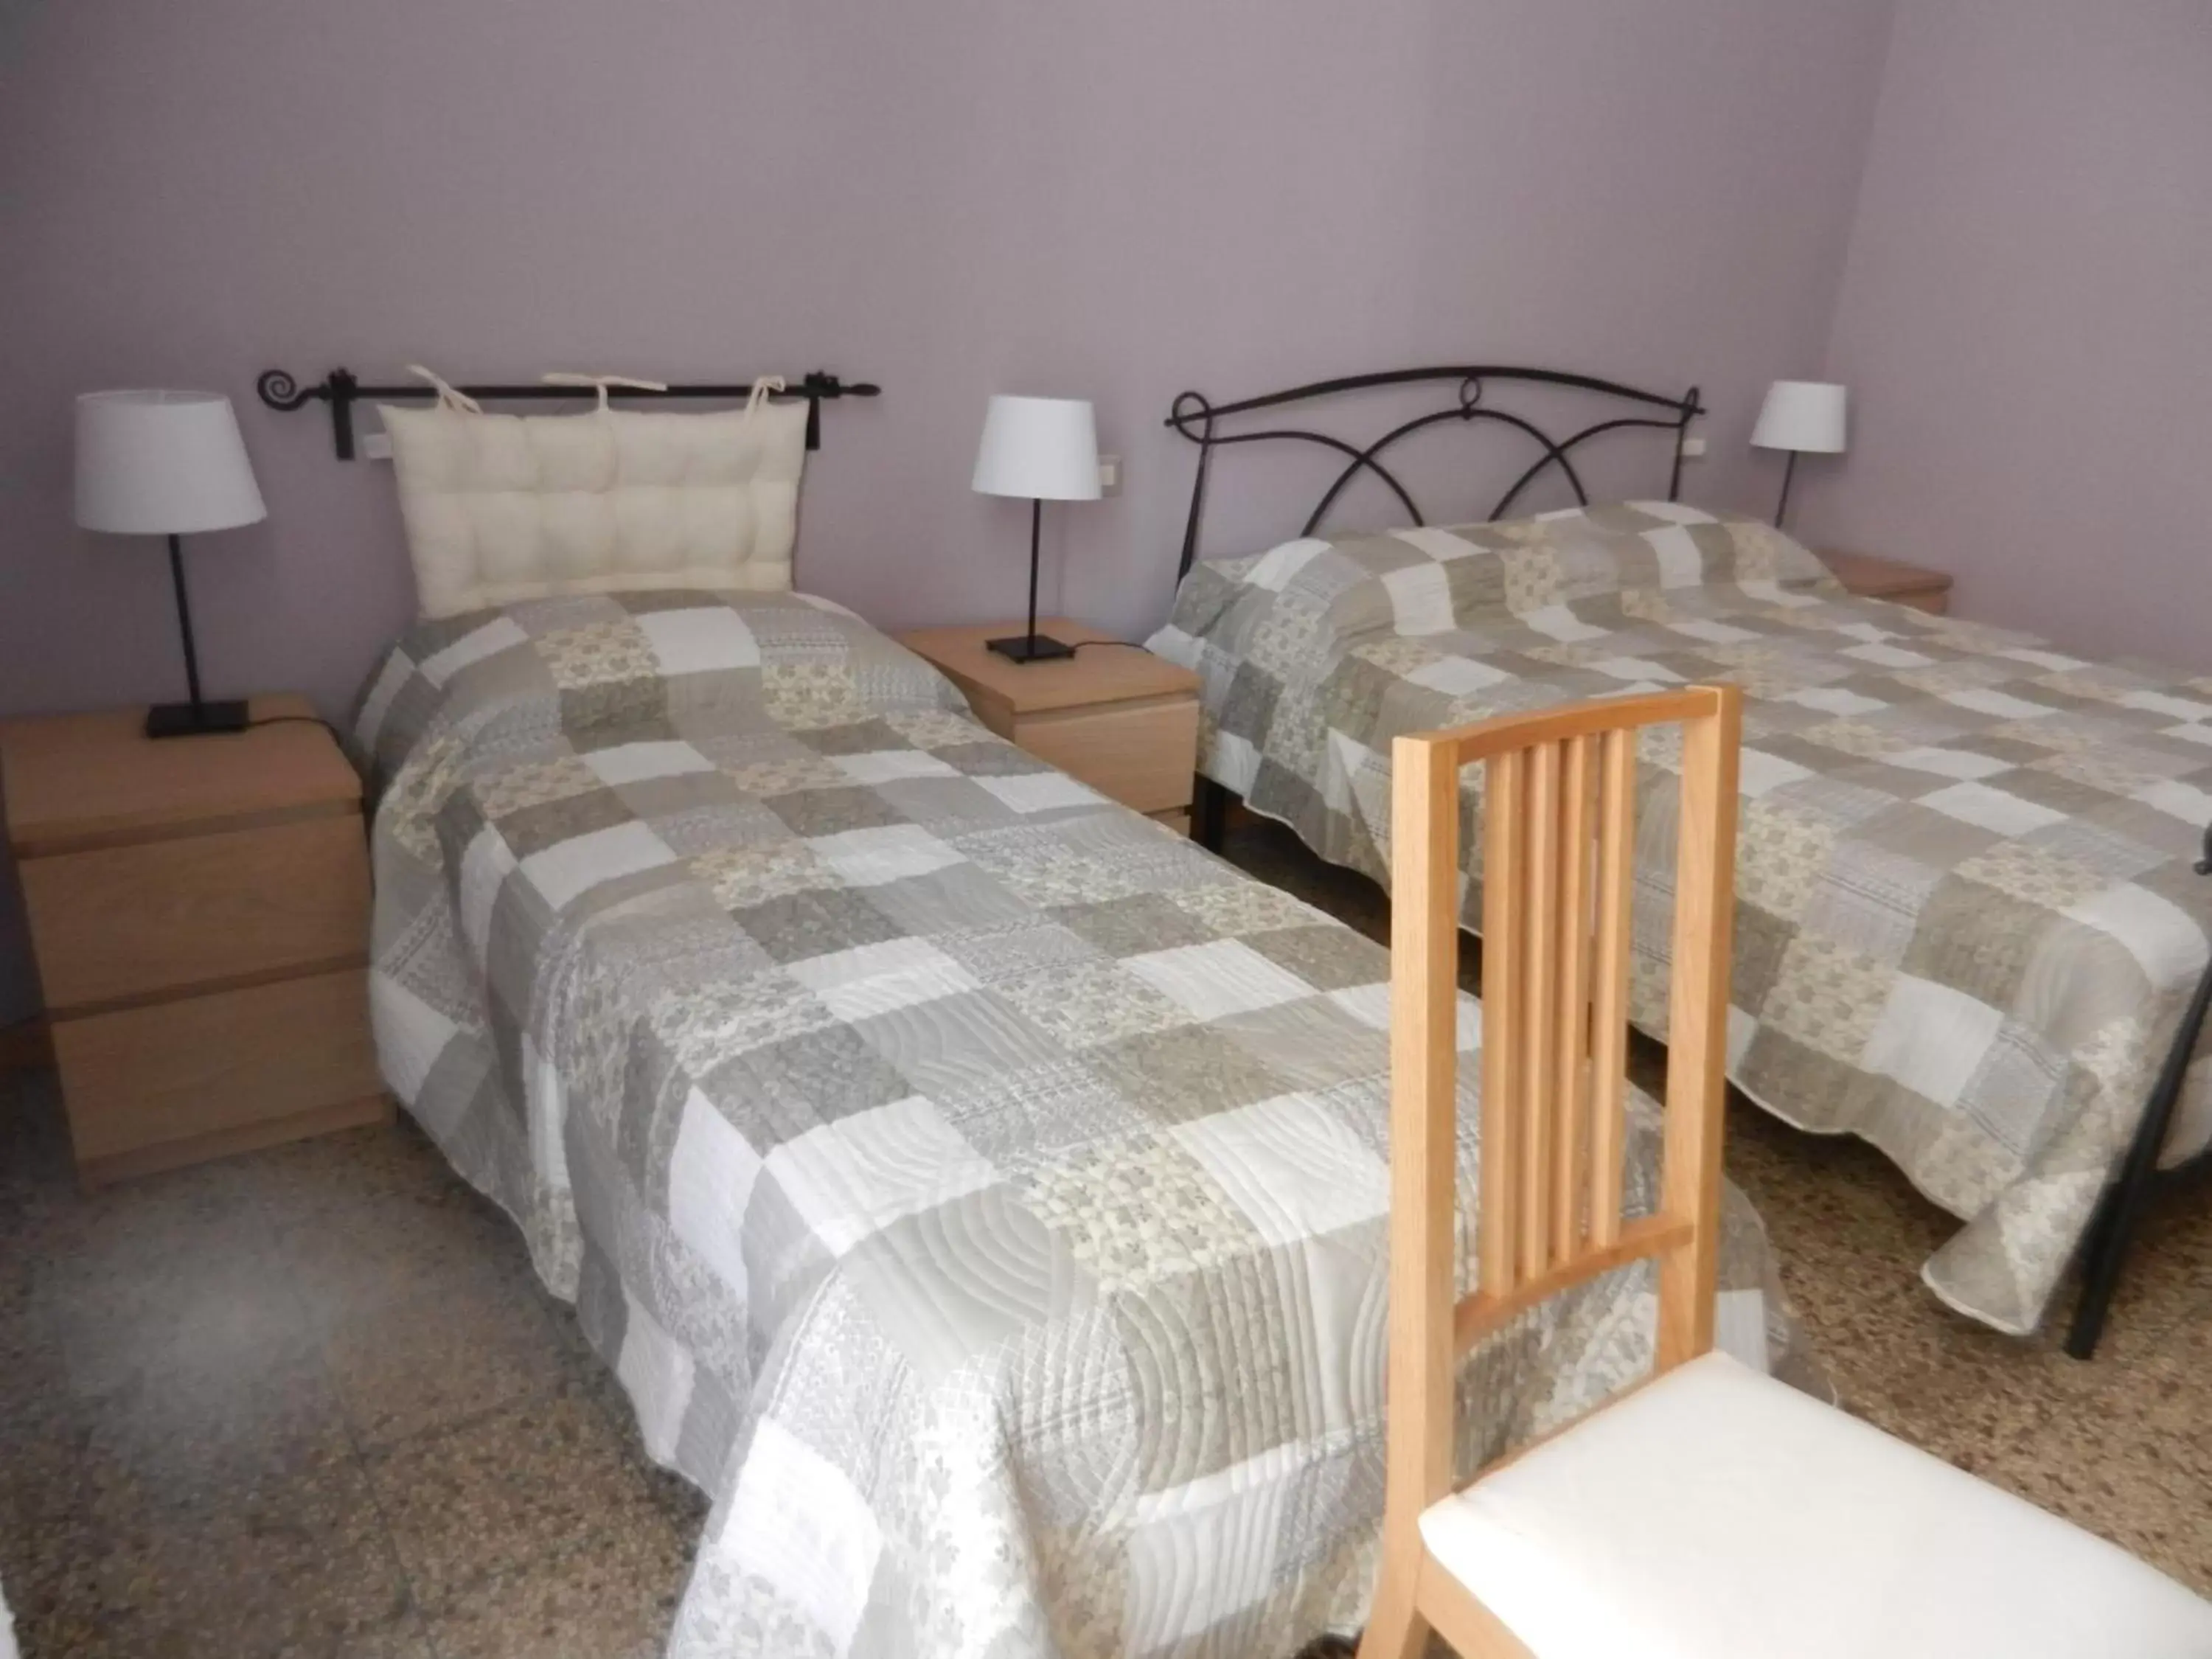 Bed, Room Photo in B&B A Casa Di GioSi